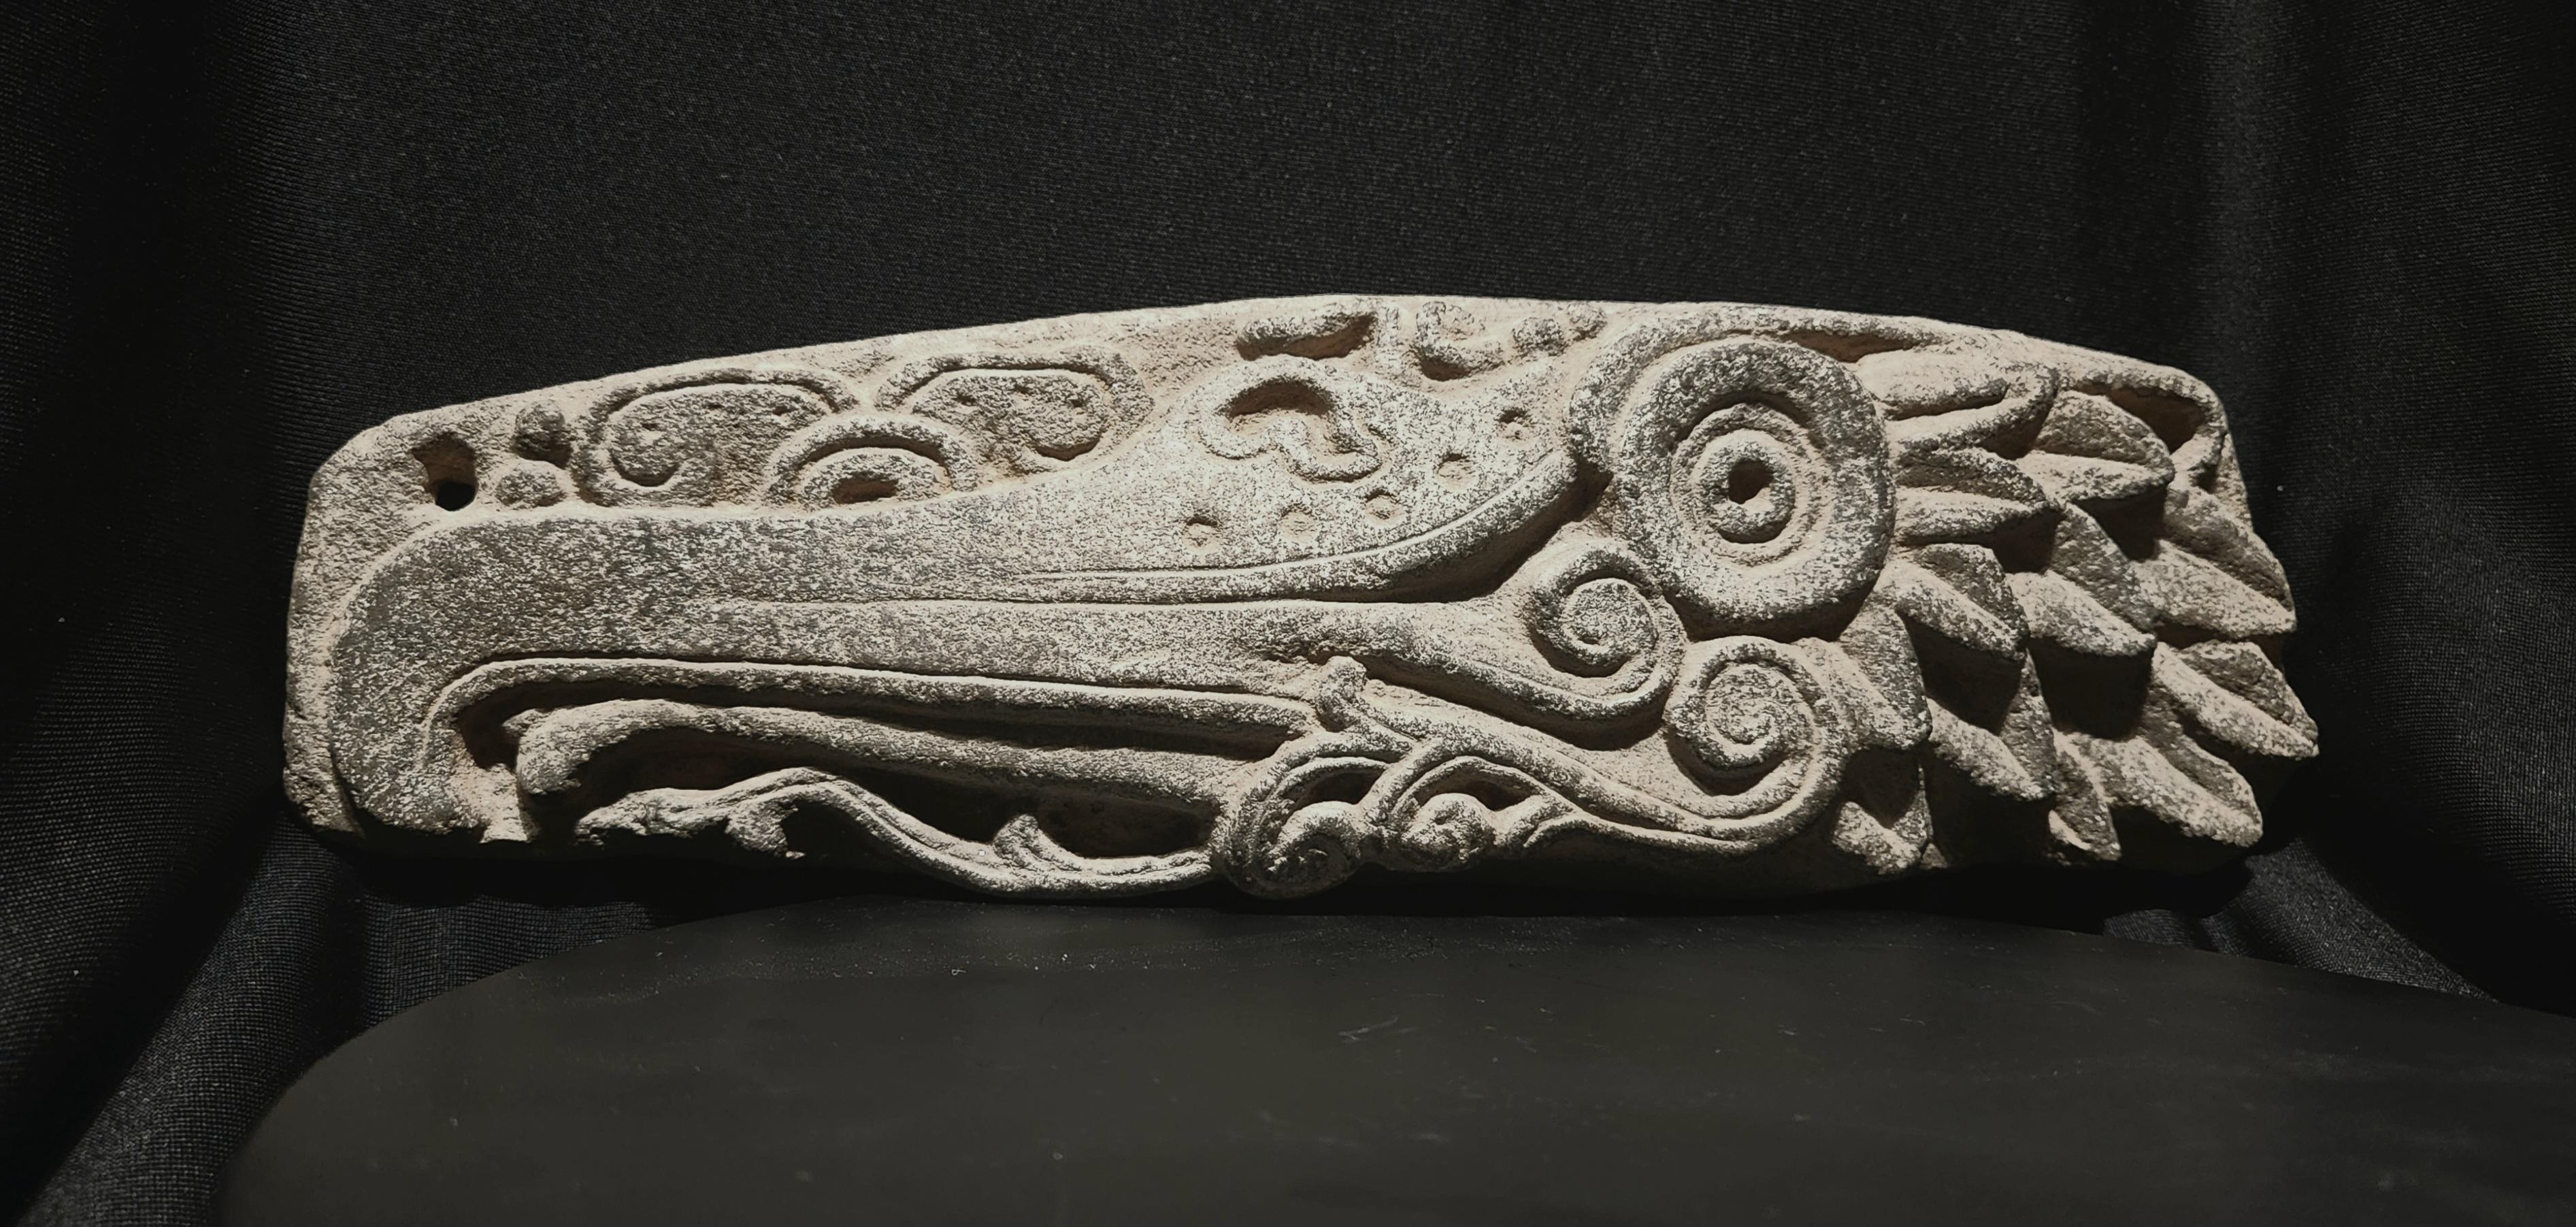 Ce magnifique panneau est un exemple de l'apogée de la sculpture sur pierre maya.
Il  représente la tête d'un cormoran de profil, avec un long bec crochu, une langue recourbée, un grand œil central, des éléments aquatiques en spirale en dessous, et